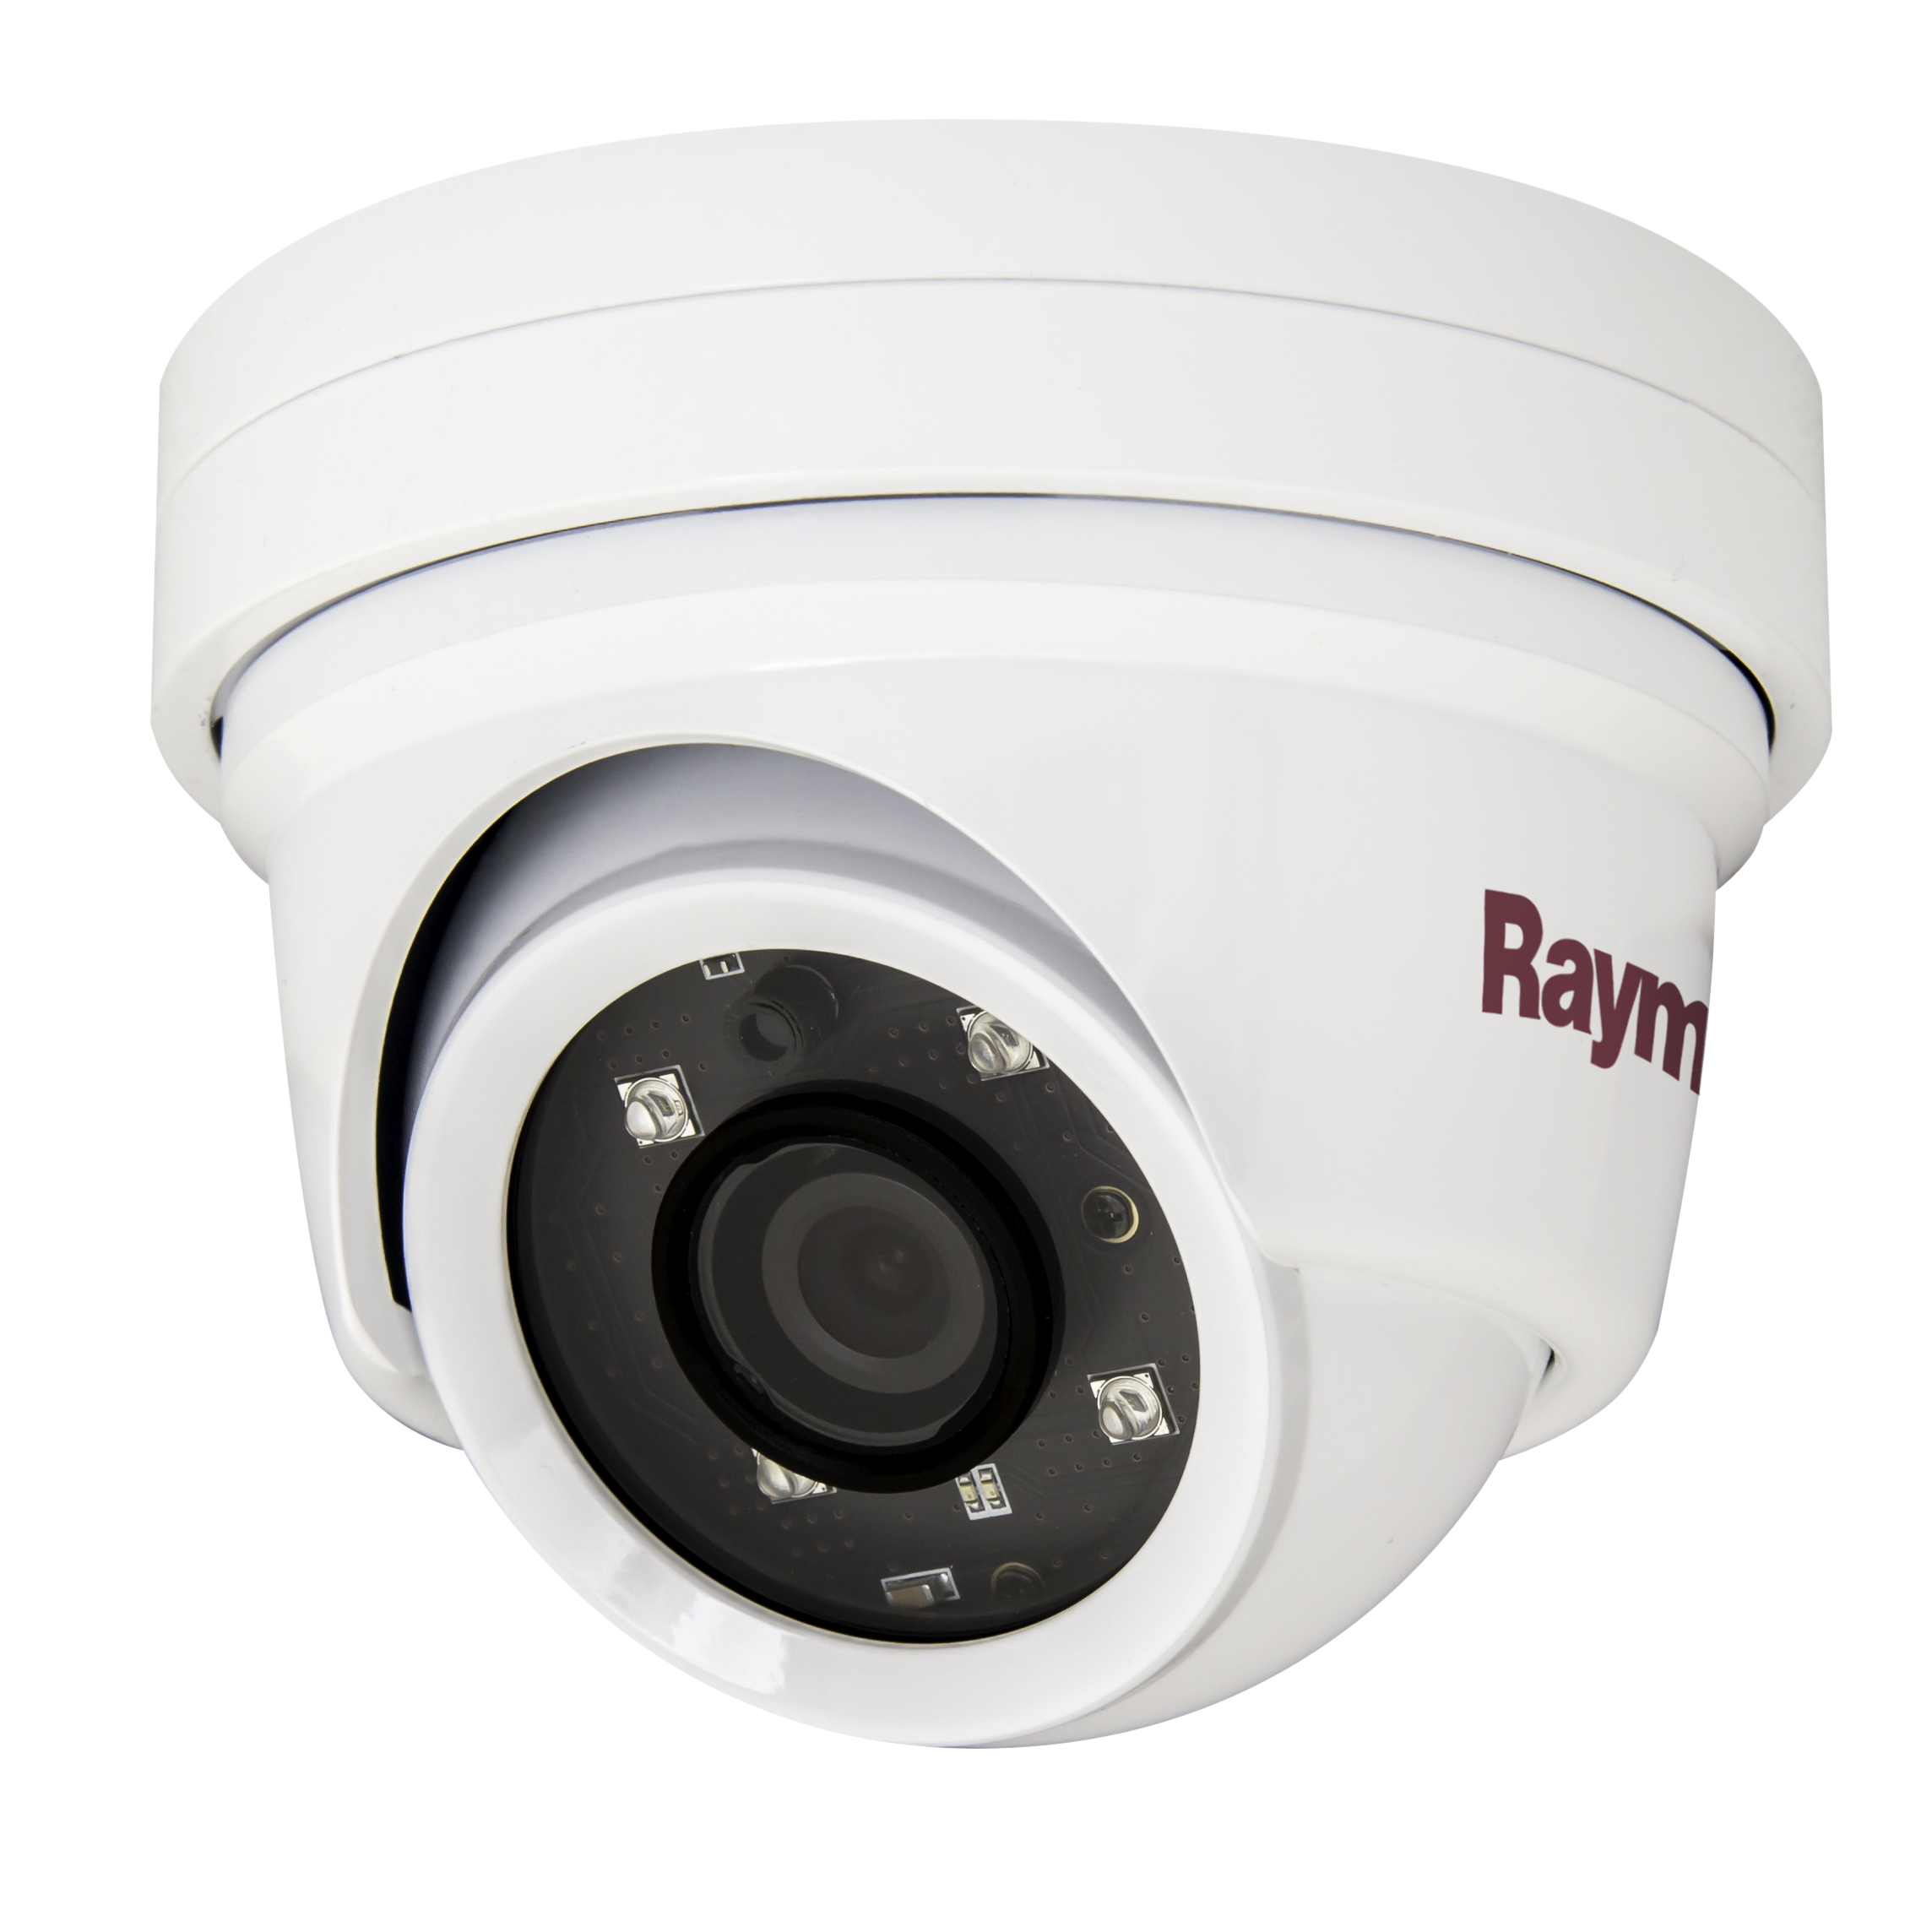 raymarine cam220 ip dome night day marine camera